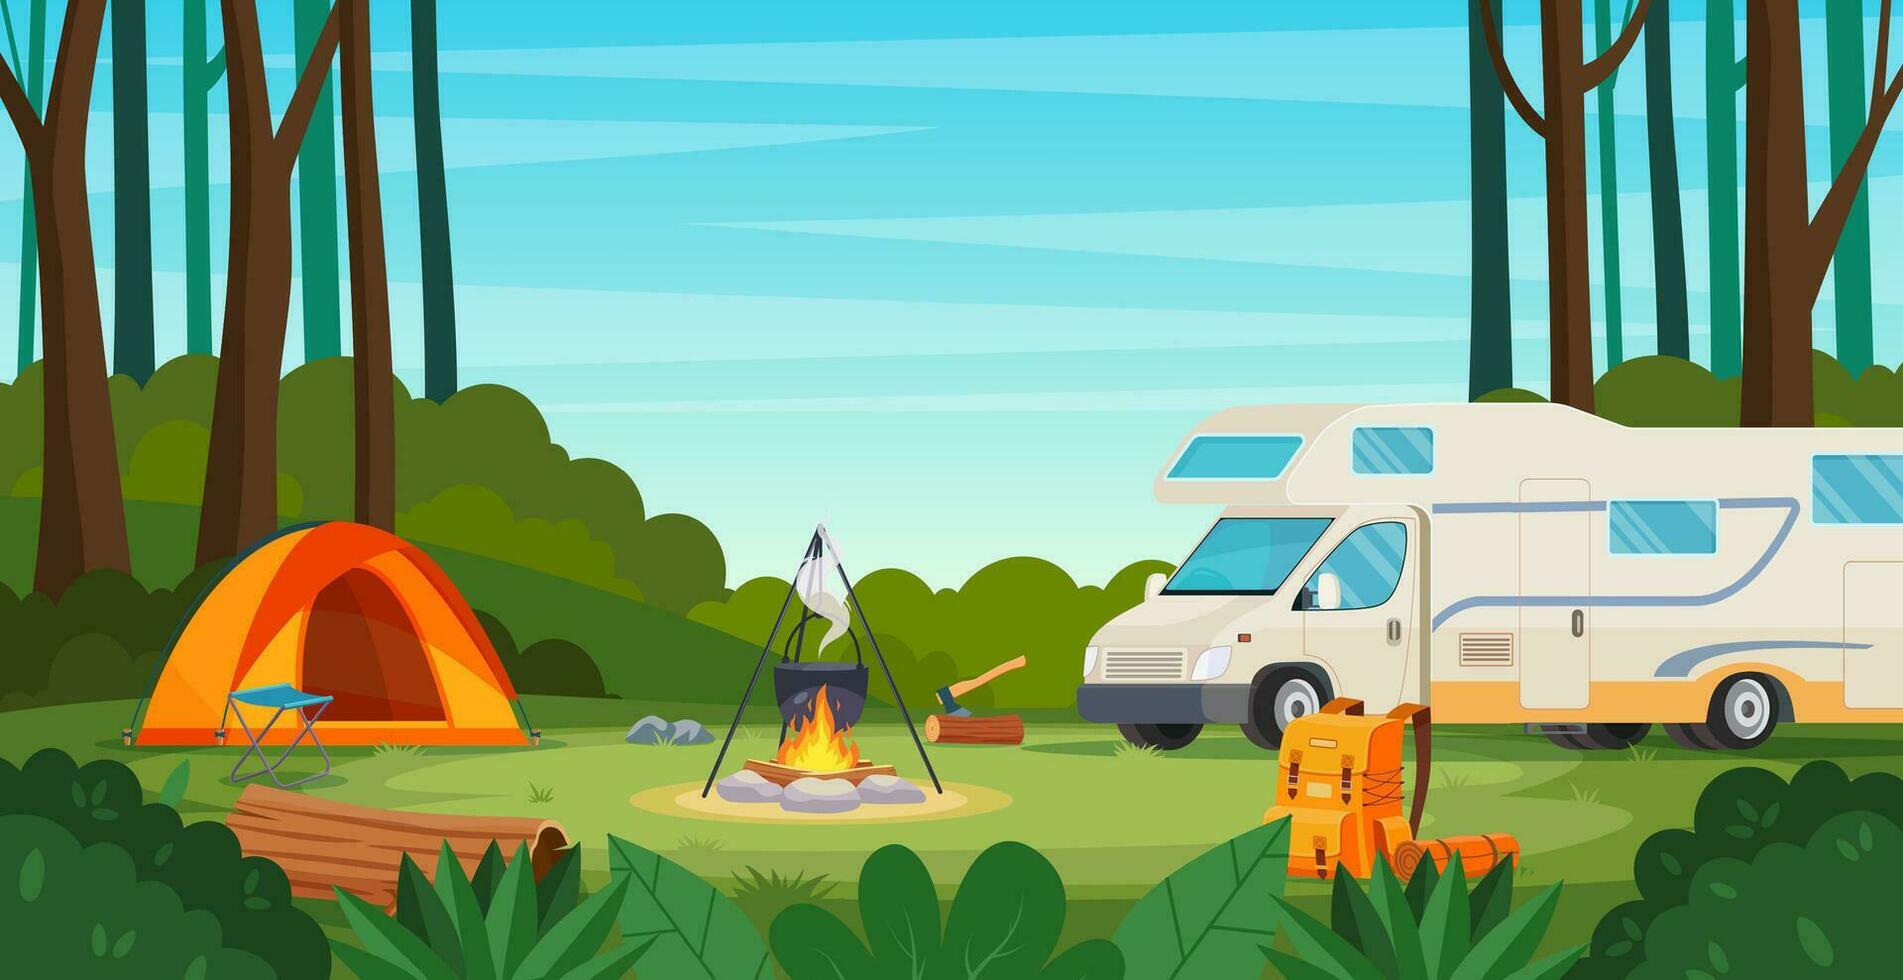 sommar läger i skog med bål, tält, skåpbil, ryggsäck. tecknad serie landskap , skog och campingplats. Utrustning för resa. vektor illustration i platt stil